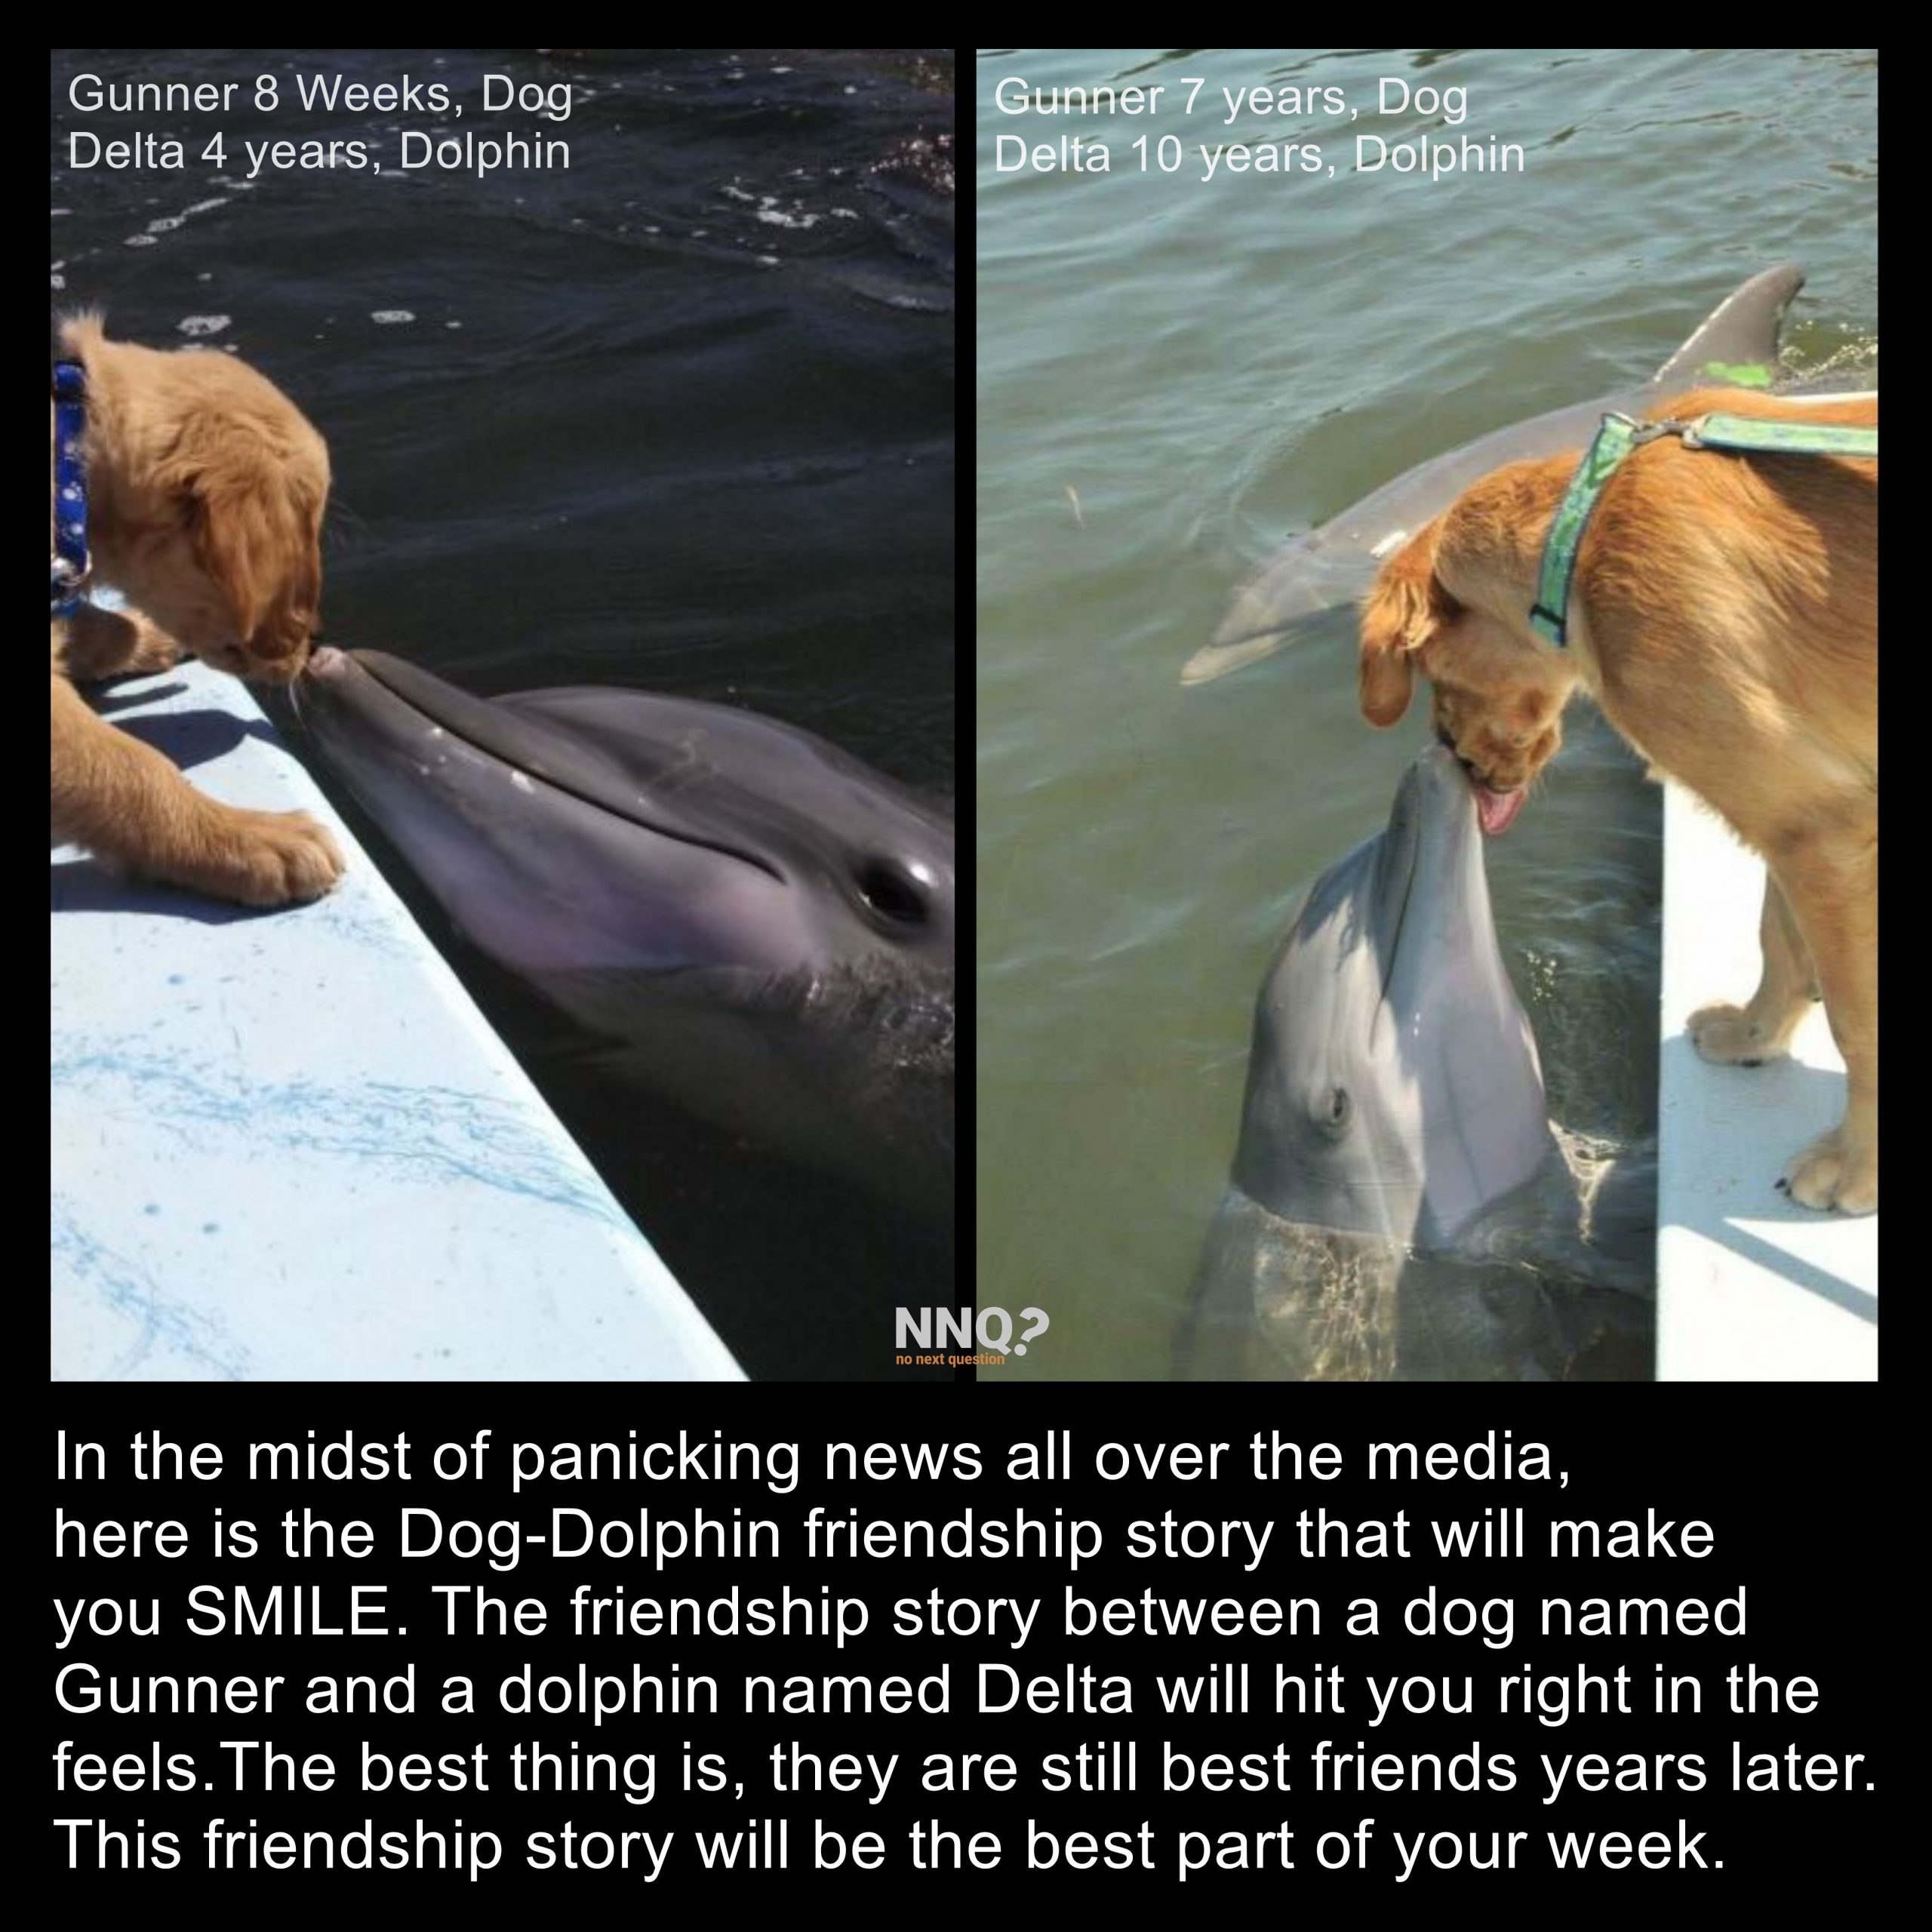 The Dag-Dolphin Friendship